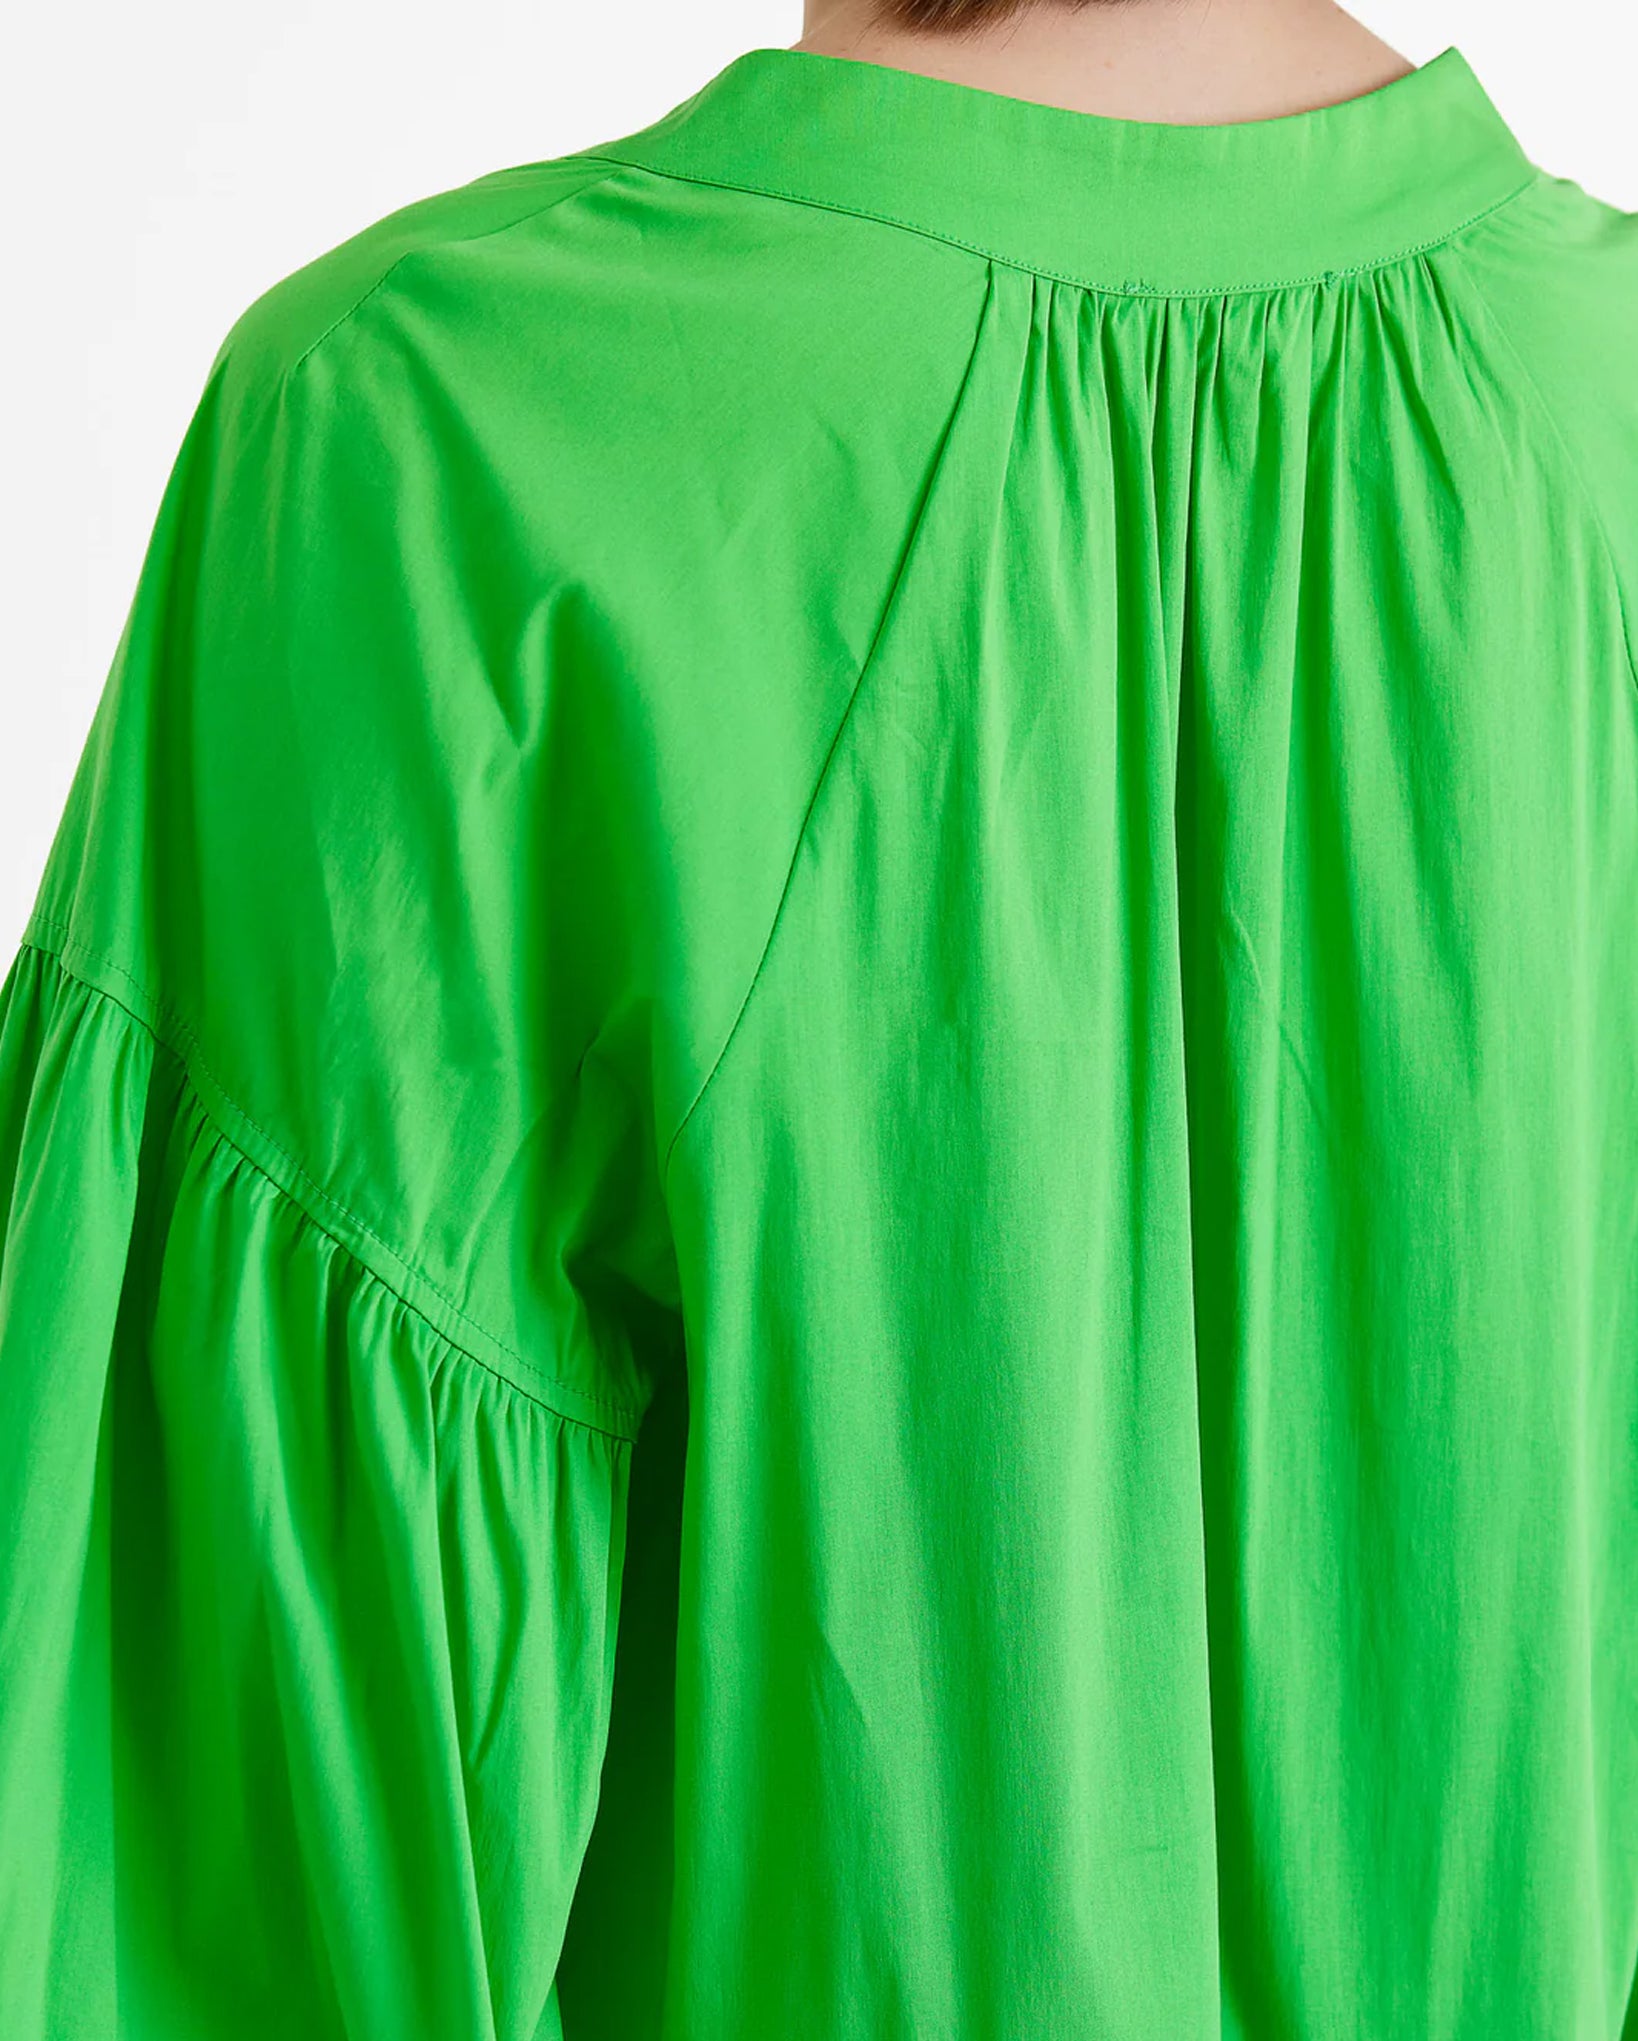 Izoldi Midi Dress (Green)